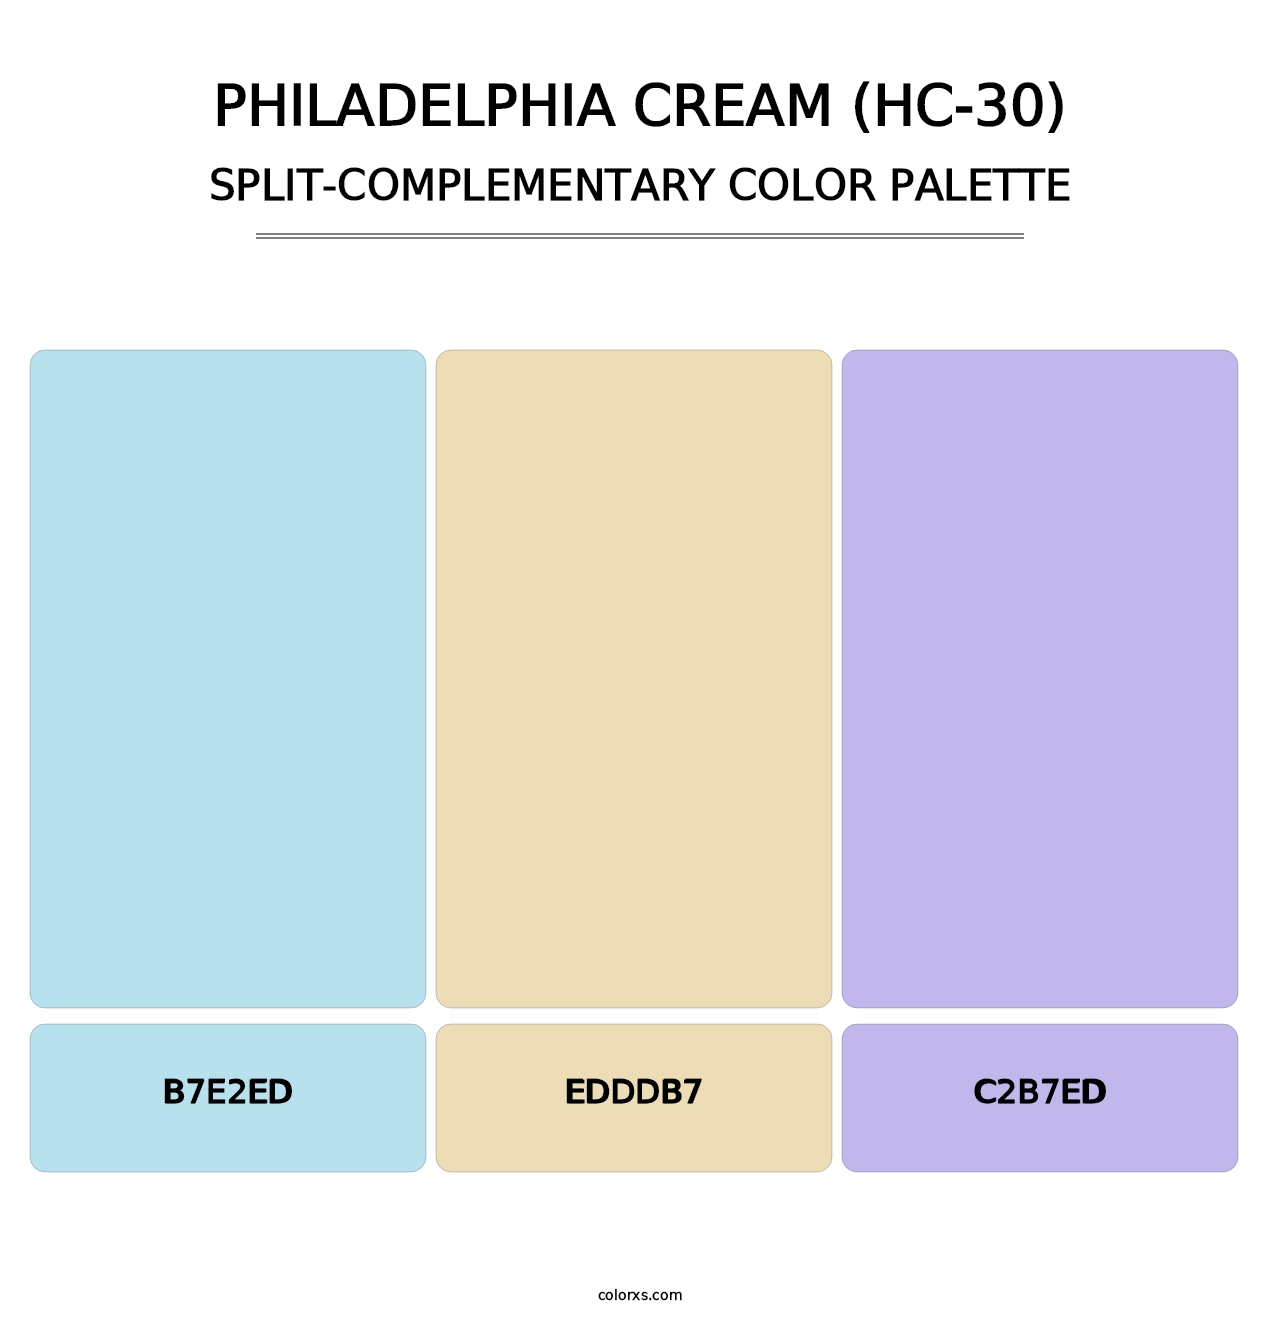 Philadelphia Cream (HC-30) - Split-Complementary Color Palette